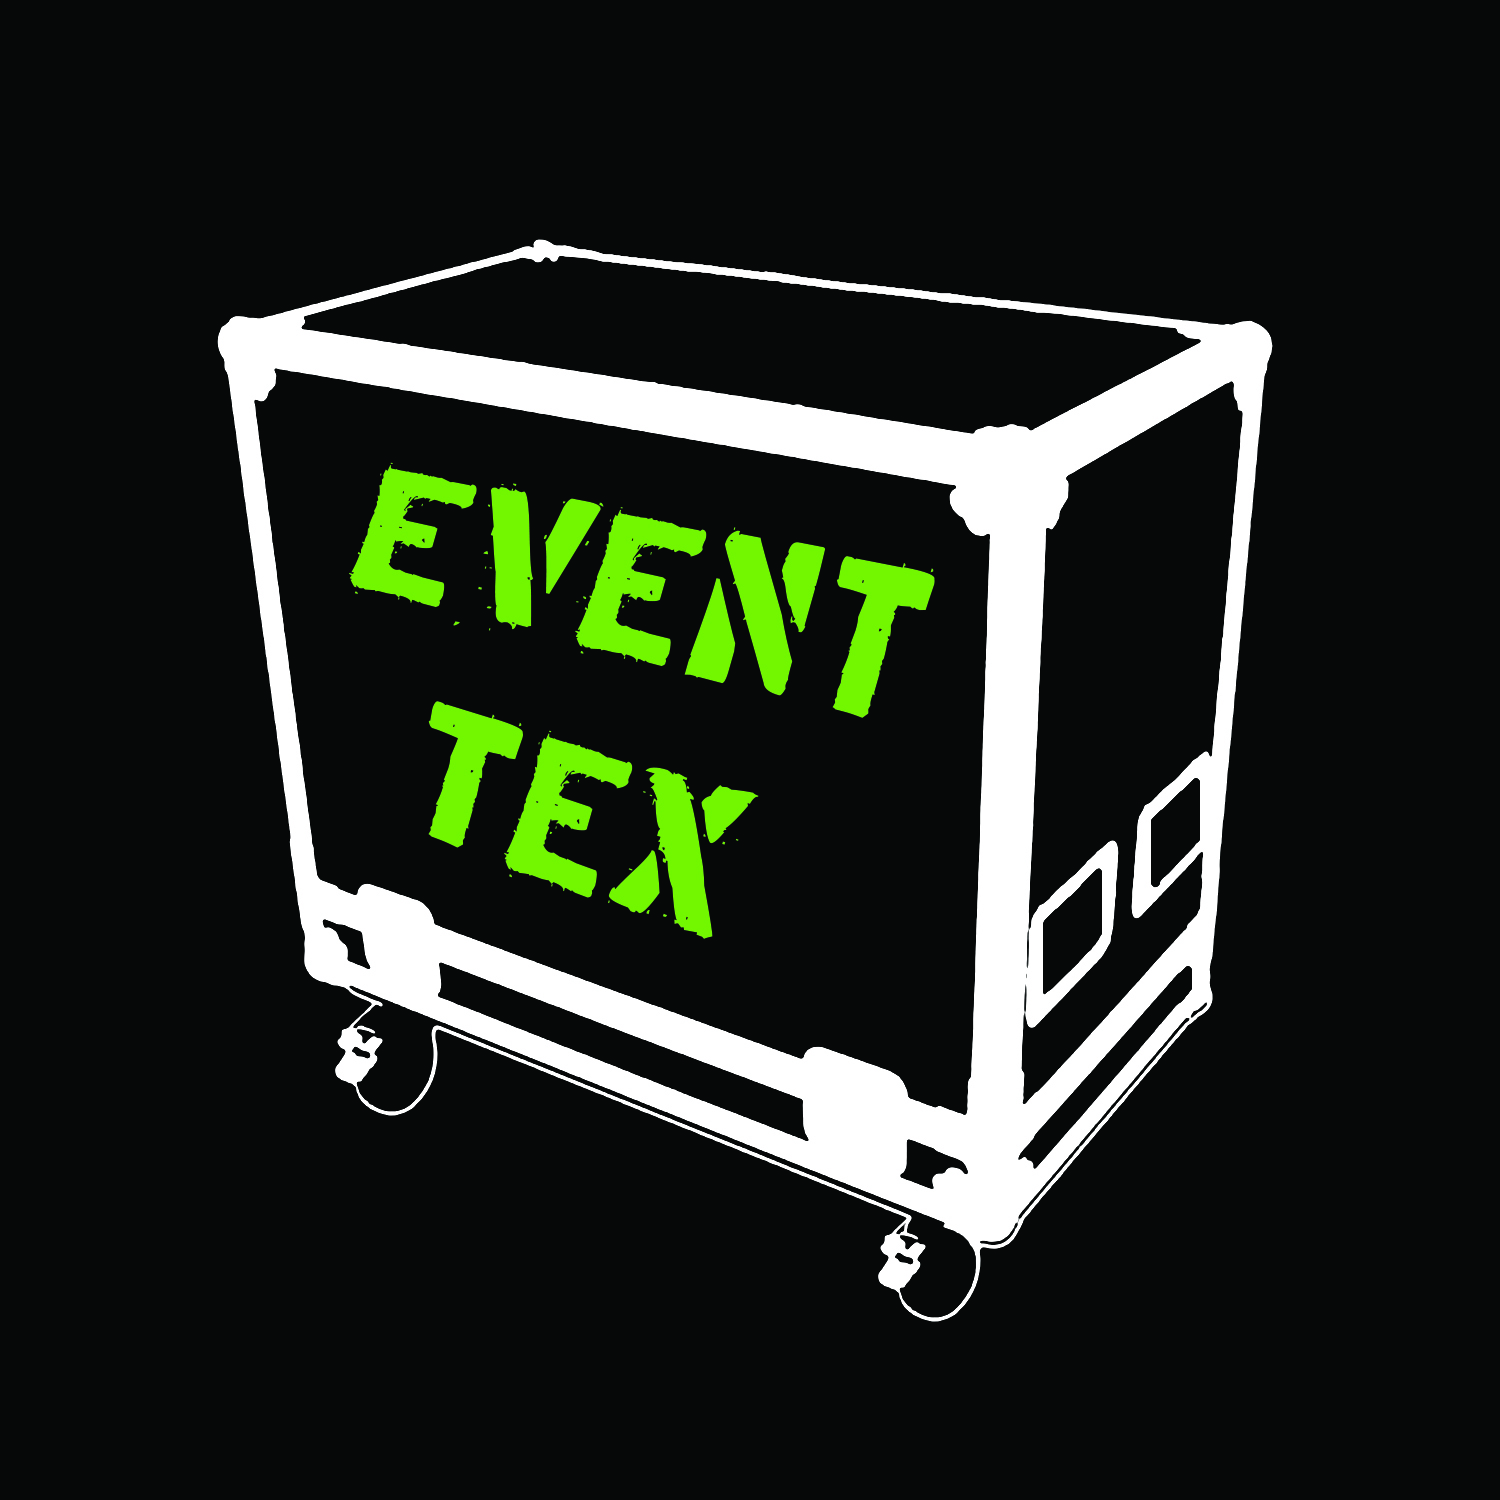 Event Tex